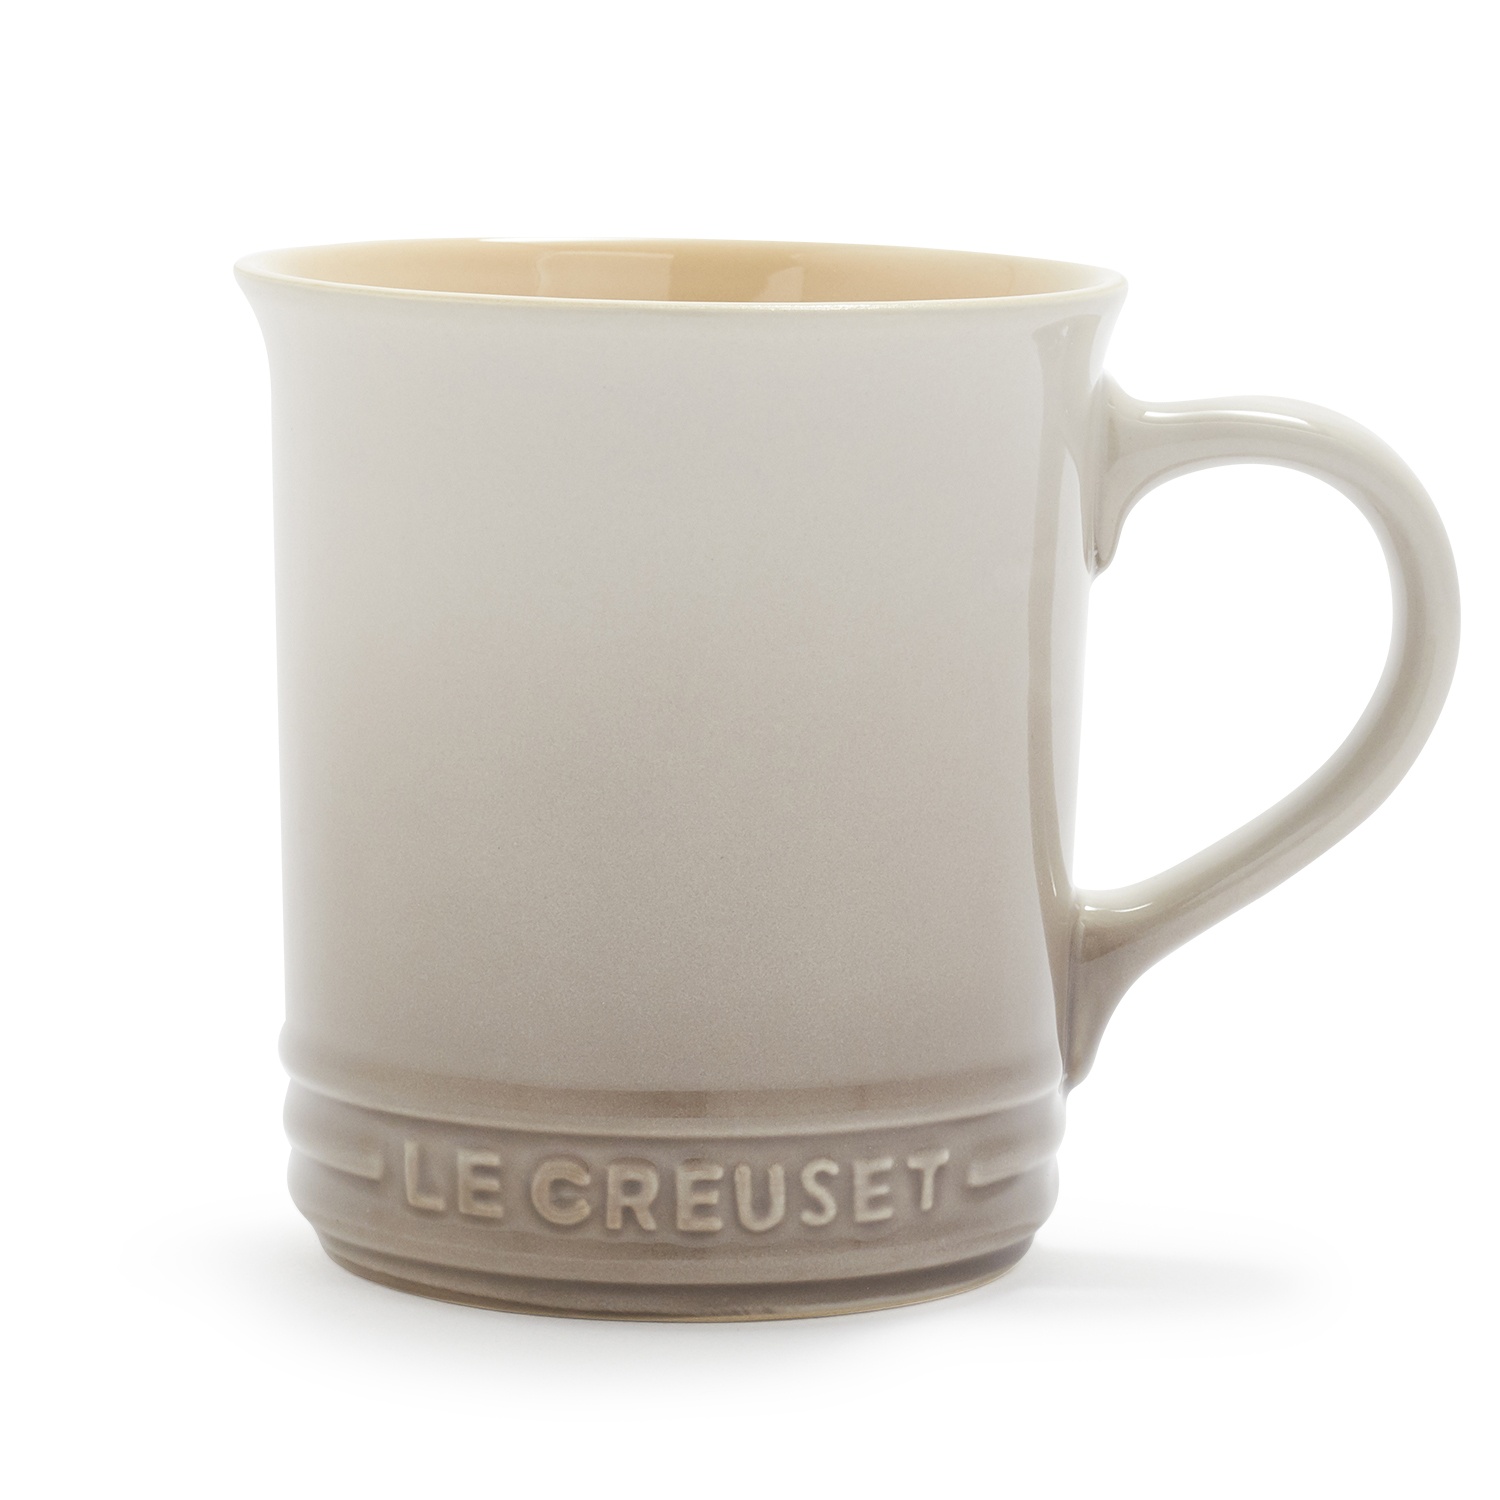 Le Creuset Mug, 12 oz | Shipt